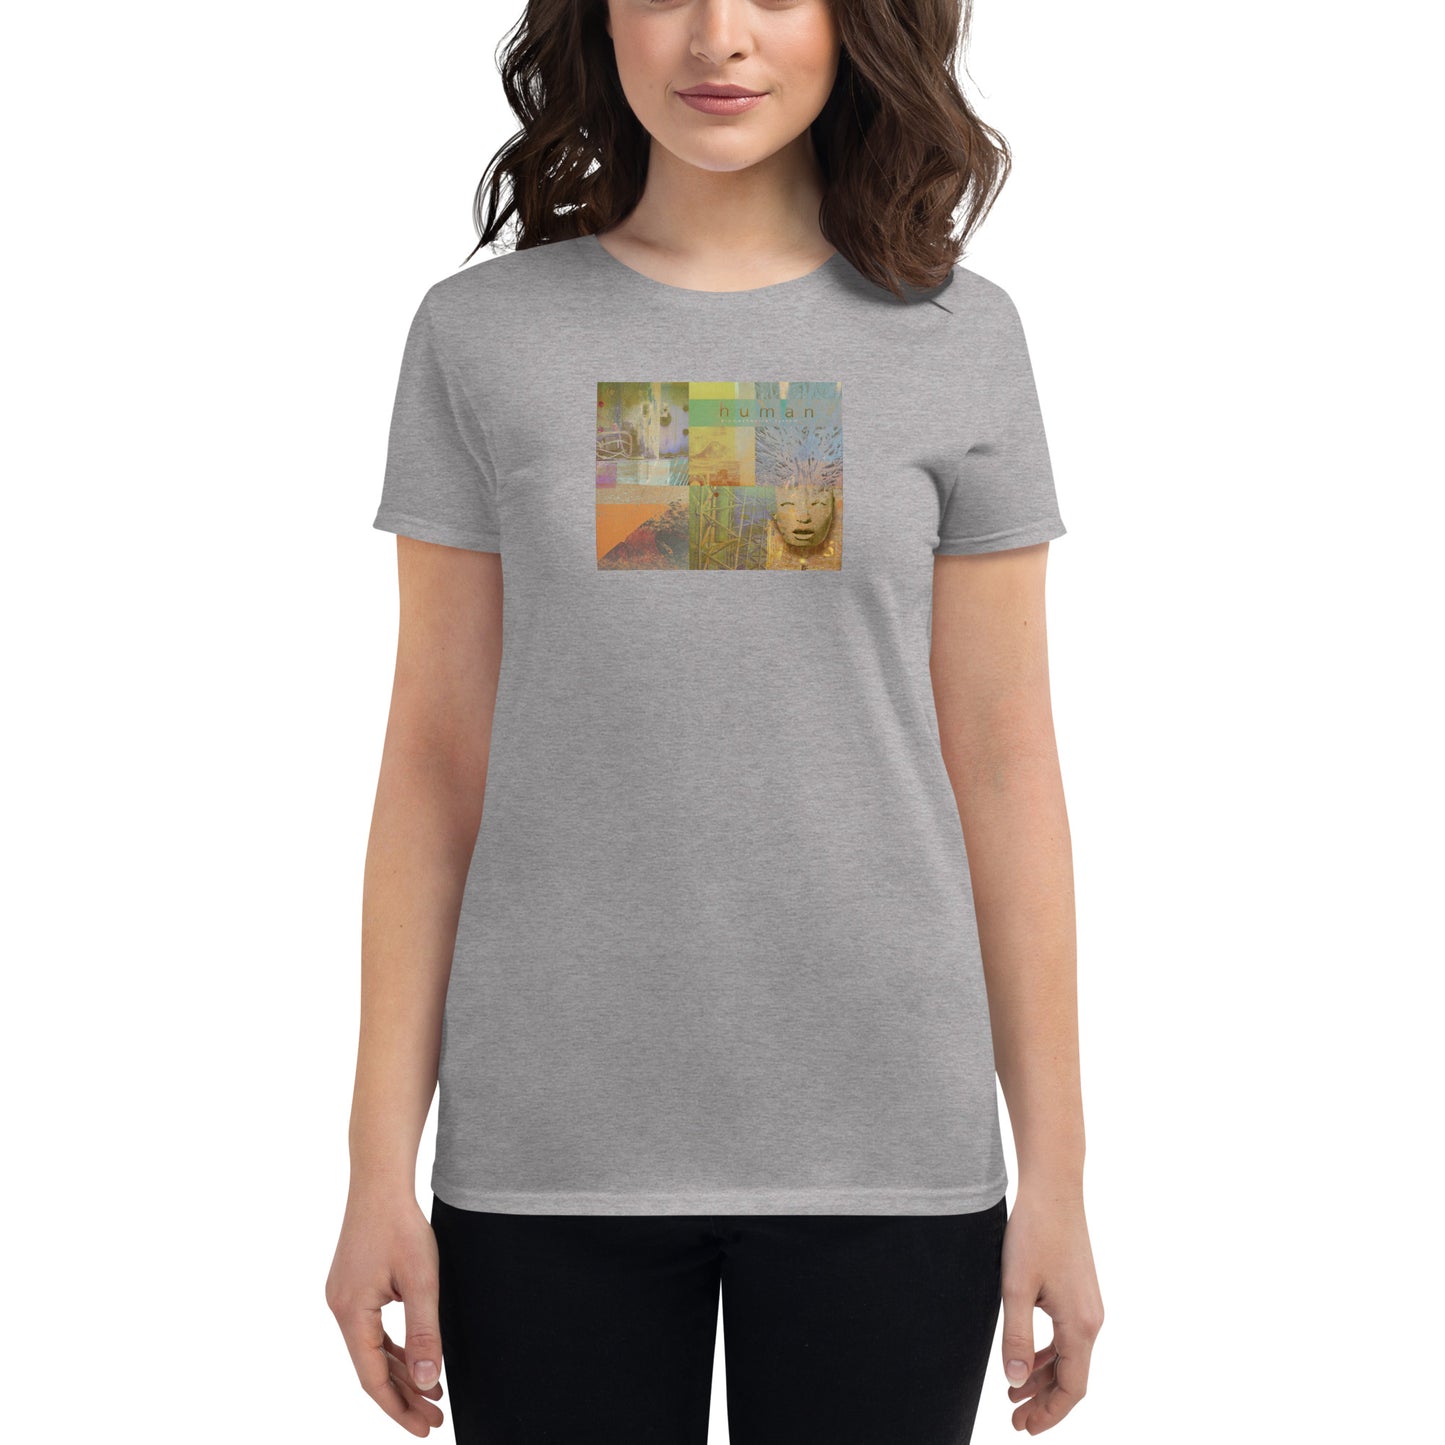 Human Bio-mechanical System - Women's short sleeve t-shirt